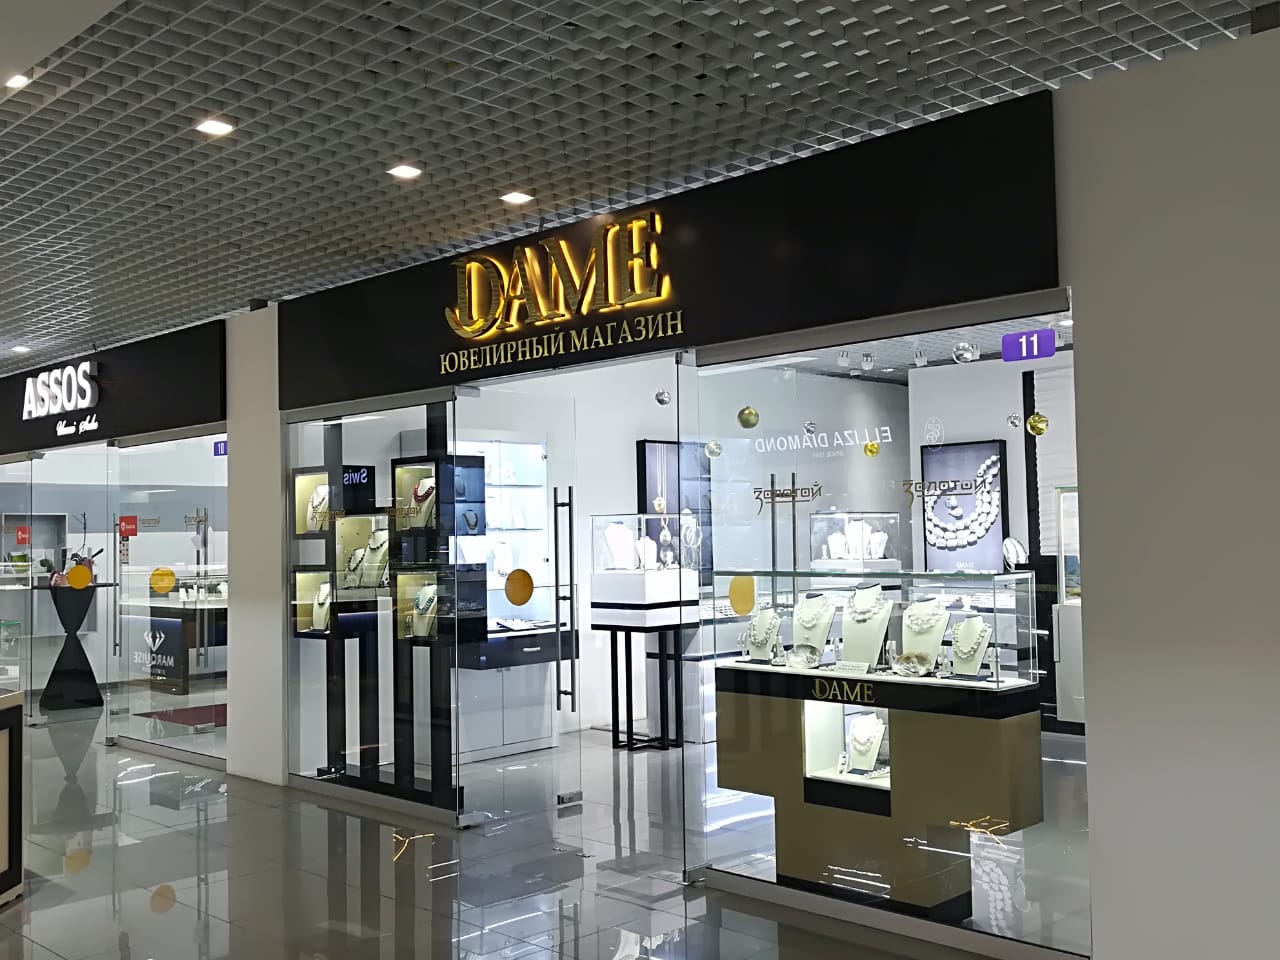 Мы открыли фирменный магазин жемчуга DAME в Казахстане в Алмате!